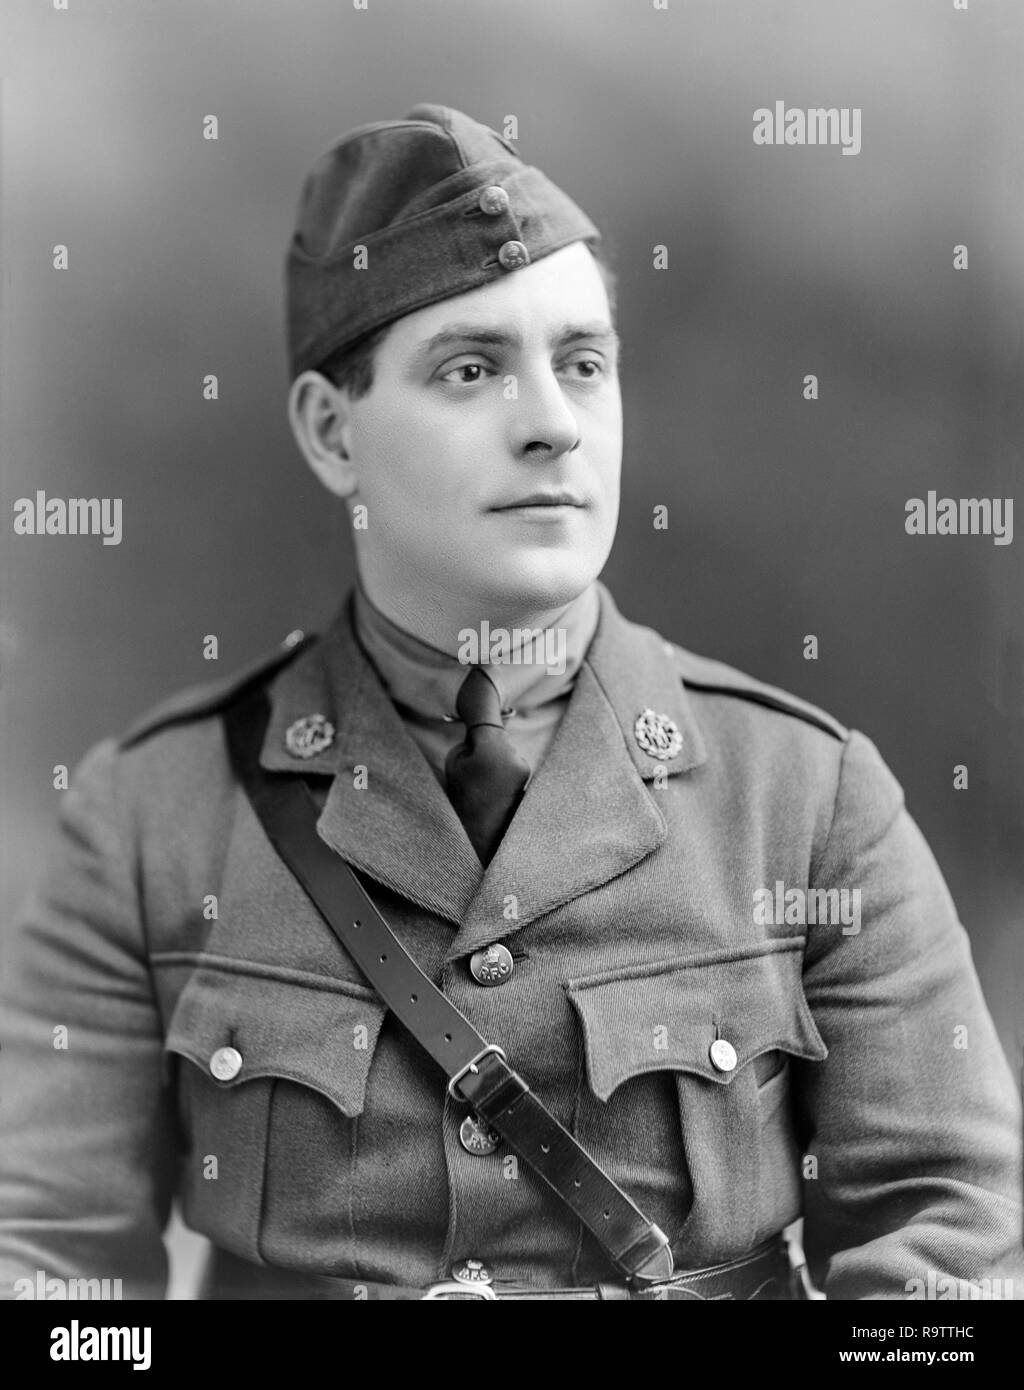 Le Sous-lieutenant J. Wingate du Royal Flying Corps. Photographie prise le 13 décembre 1916 lors de la célèbre London Studio photographes Bassano de Londres. Banque D'Images